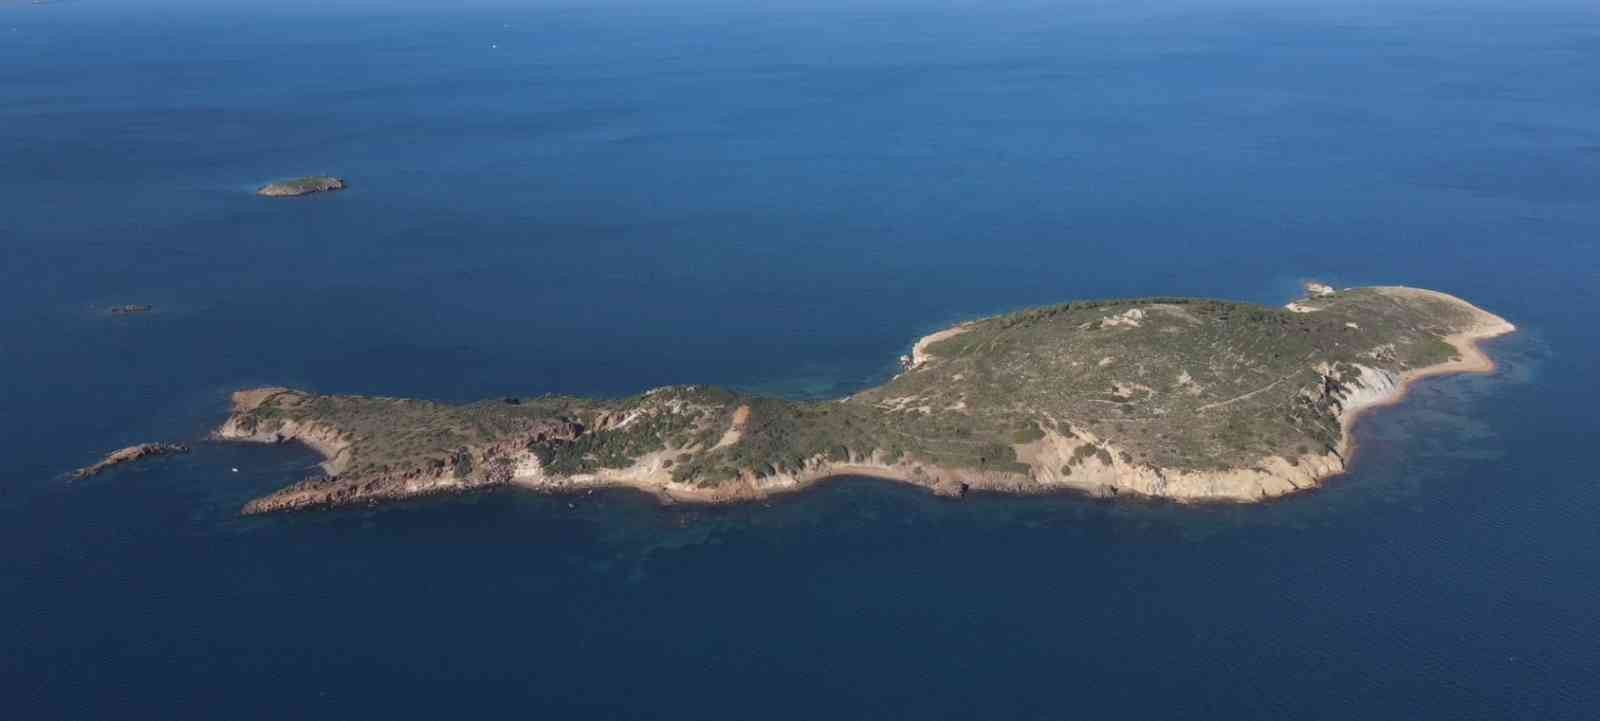 Ayvalık’ta Kara Ada’nın kesin koruma alanı ilan edilmesi sevinci